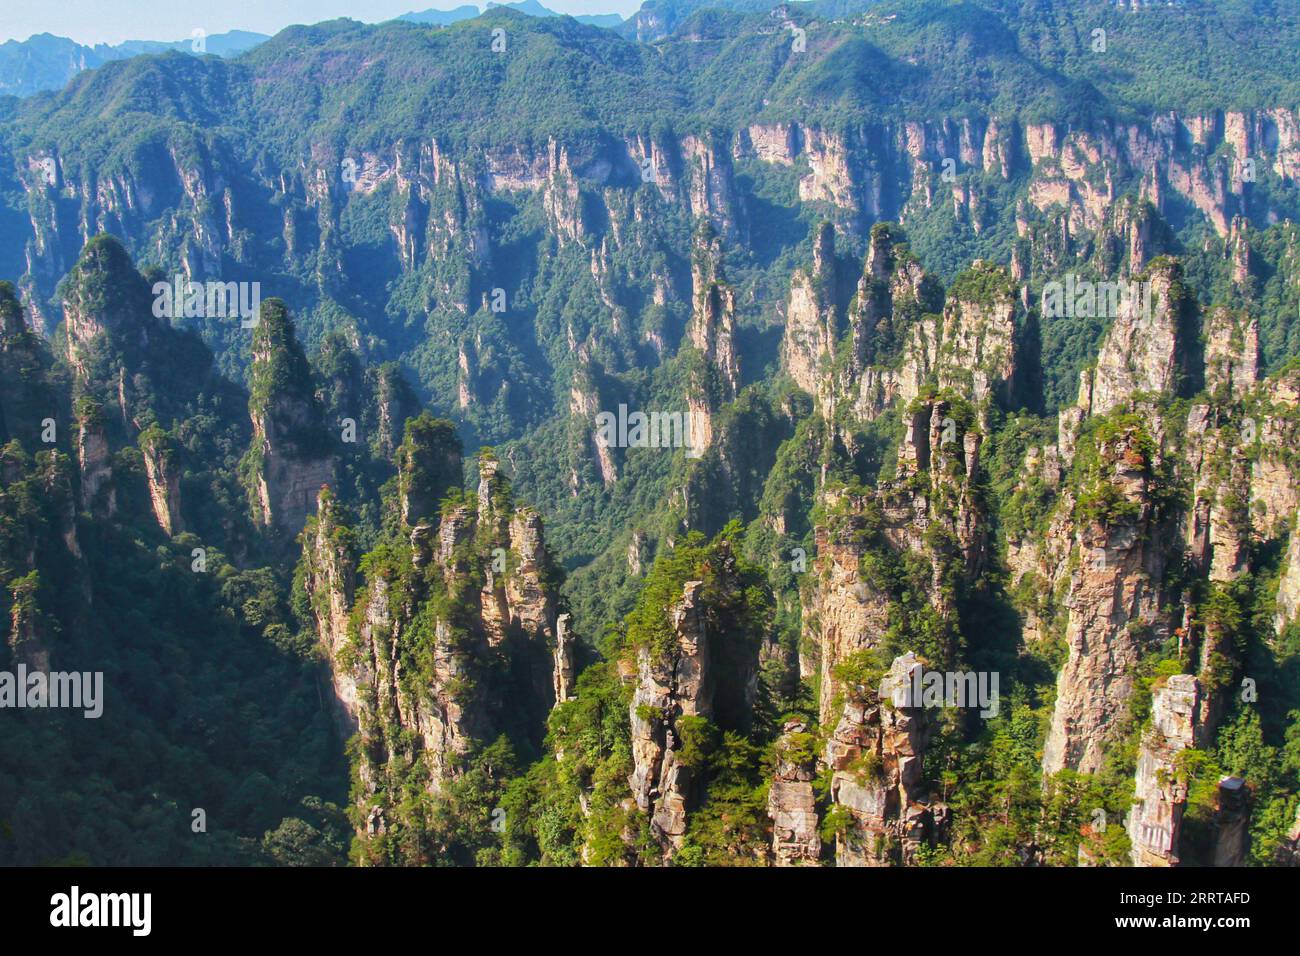 Cattura l'essenza mozzafiato delle montagne imponenti e taglienti della Cina, che ricordano i paesaggi mozzafiato del film Avatar. Foto Stock